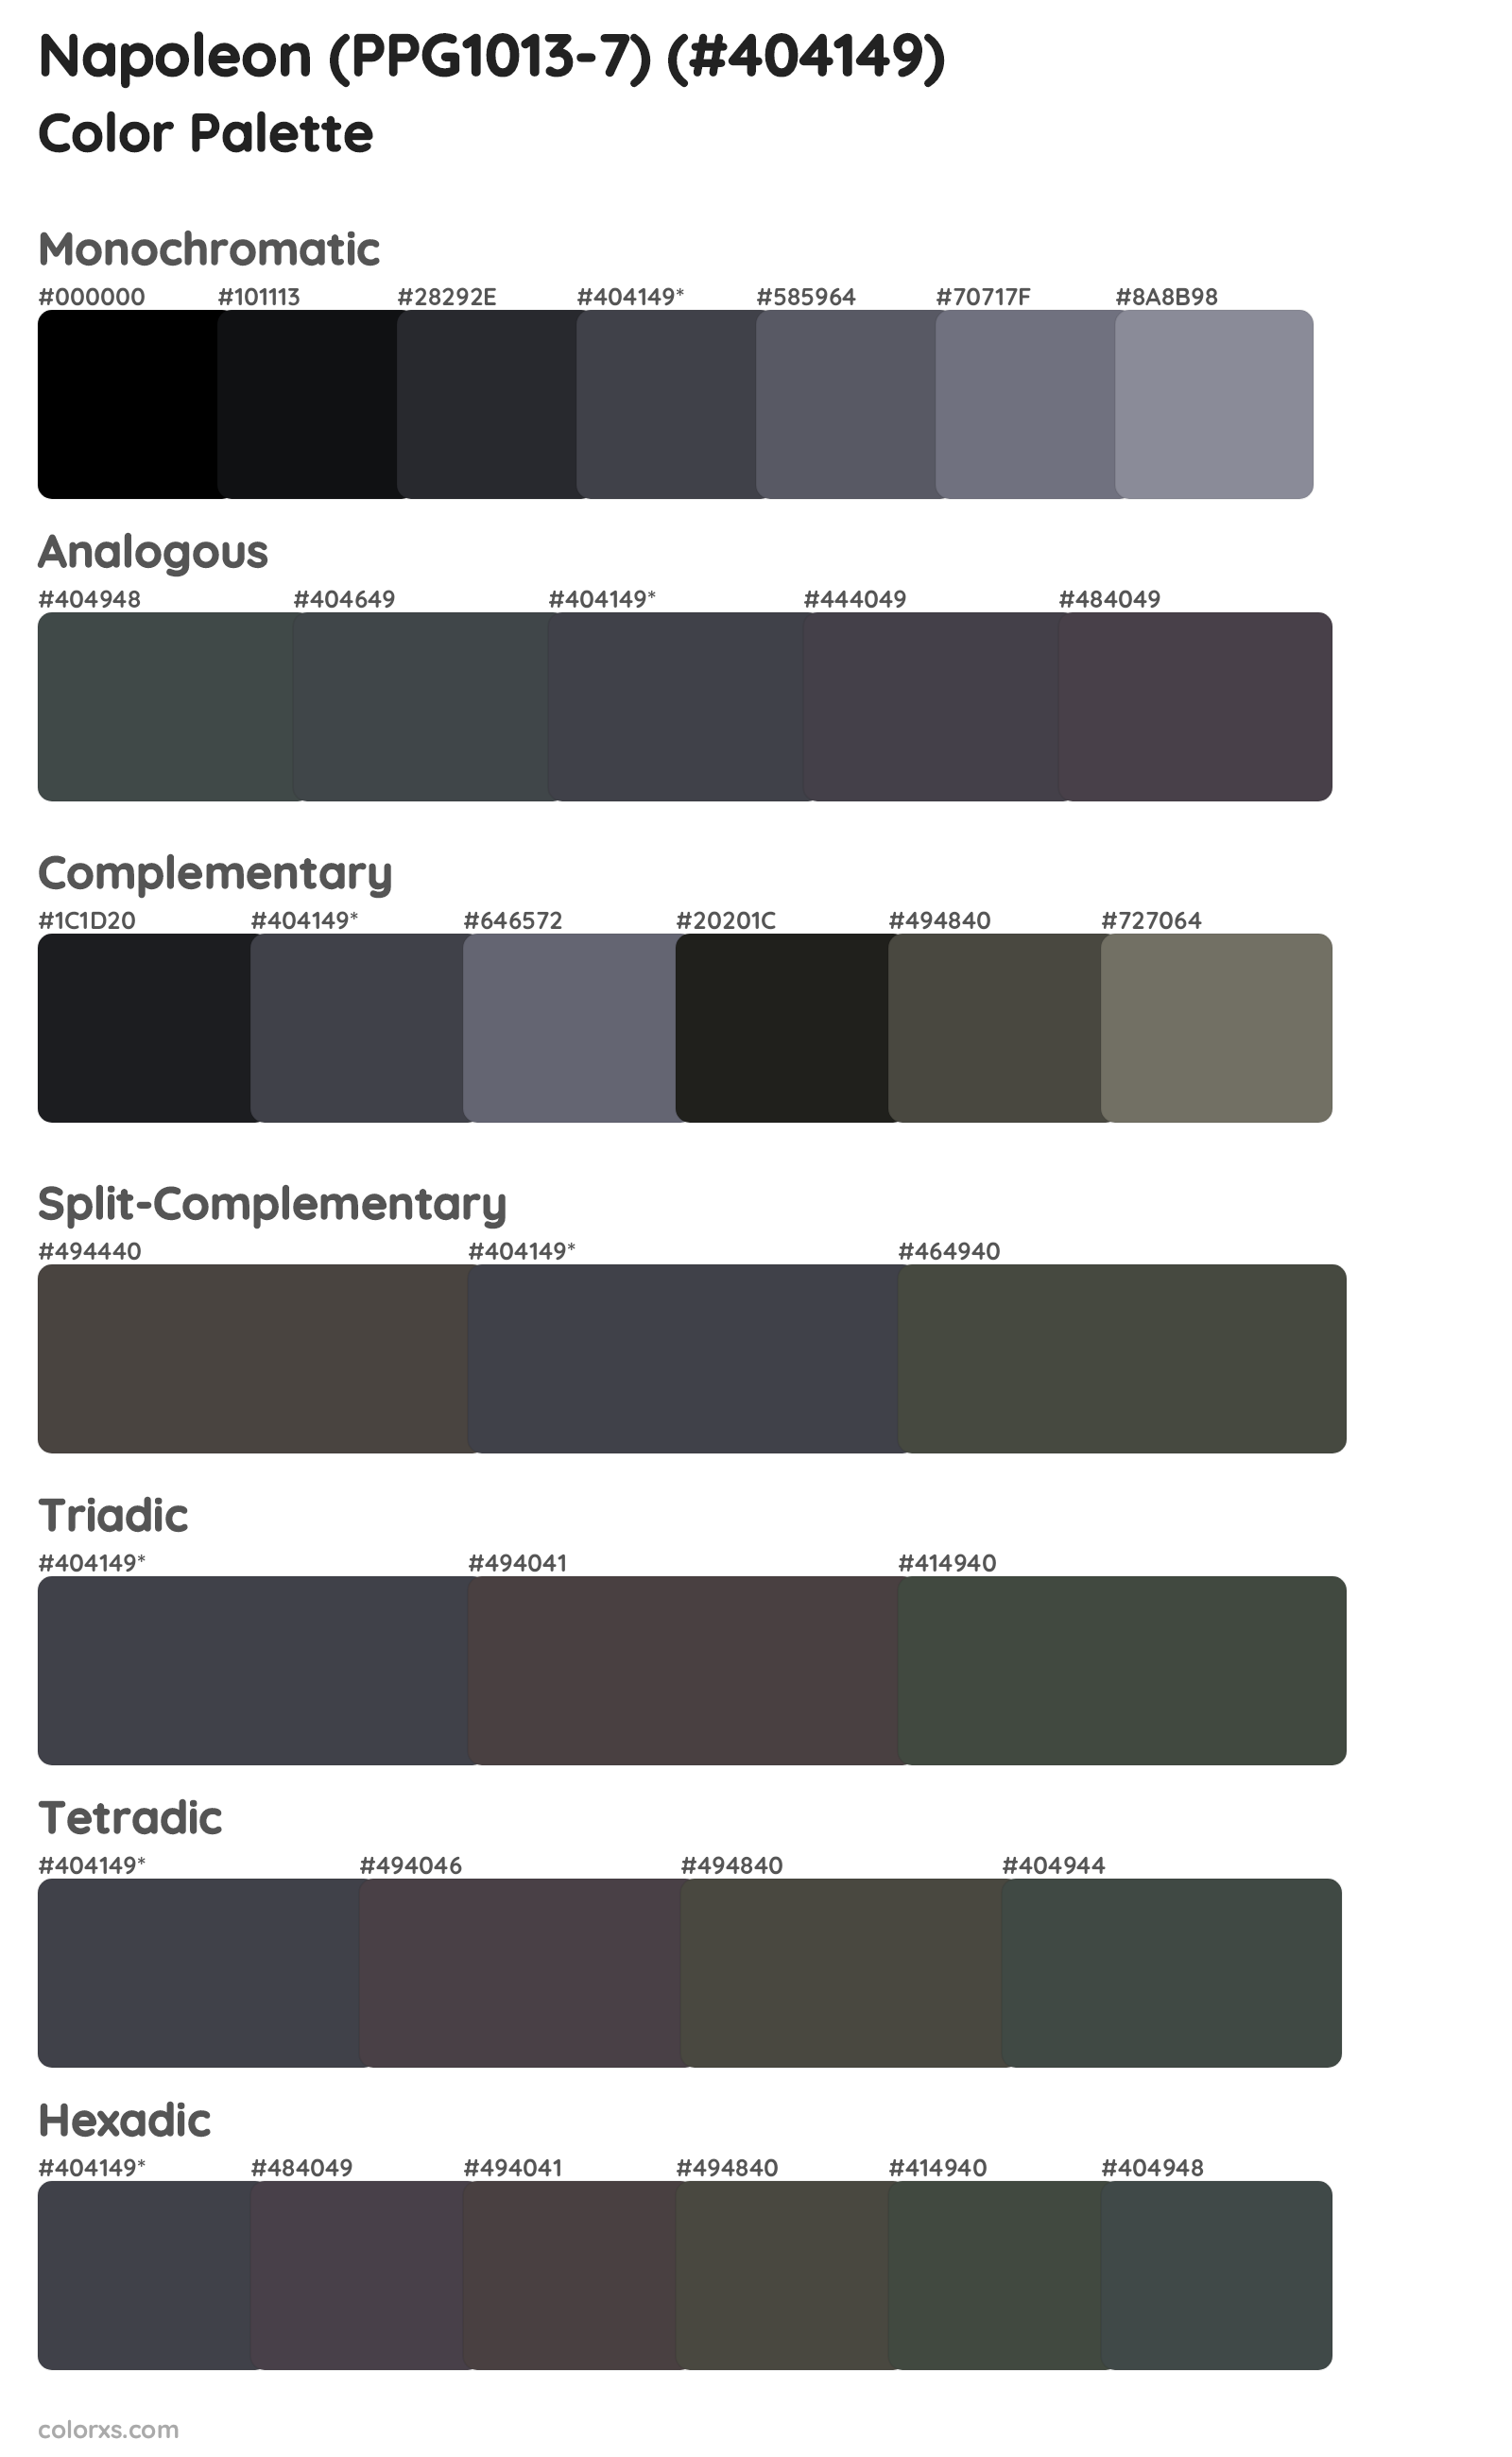 Napoleon (PPG1013-7) Color Scheme Palettes